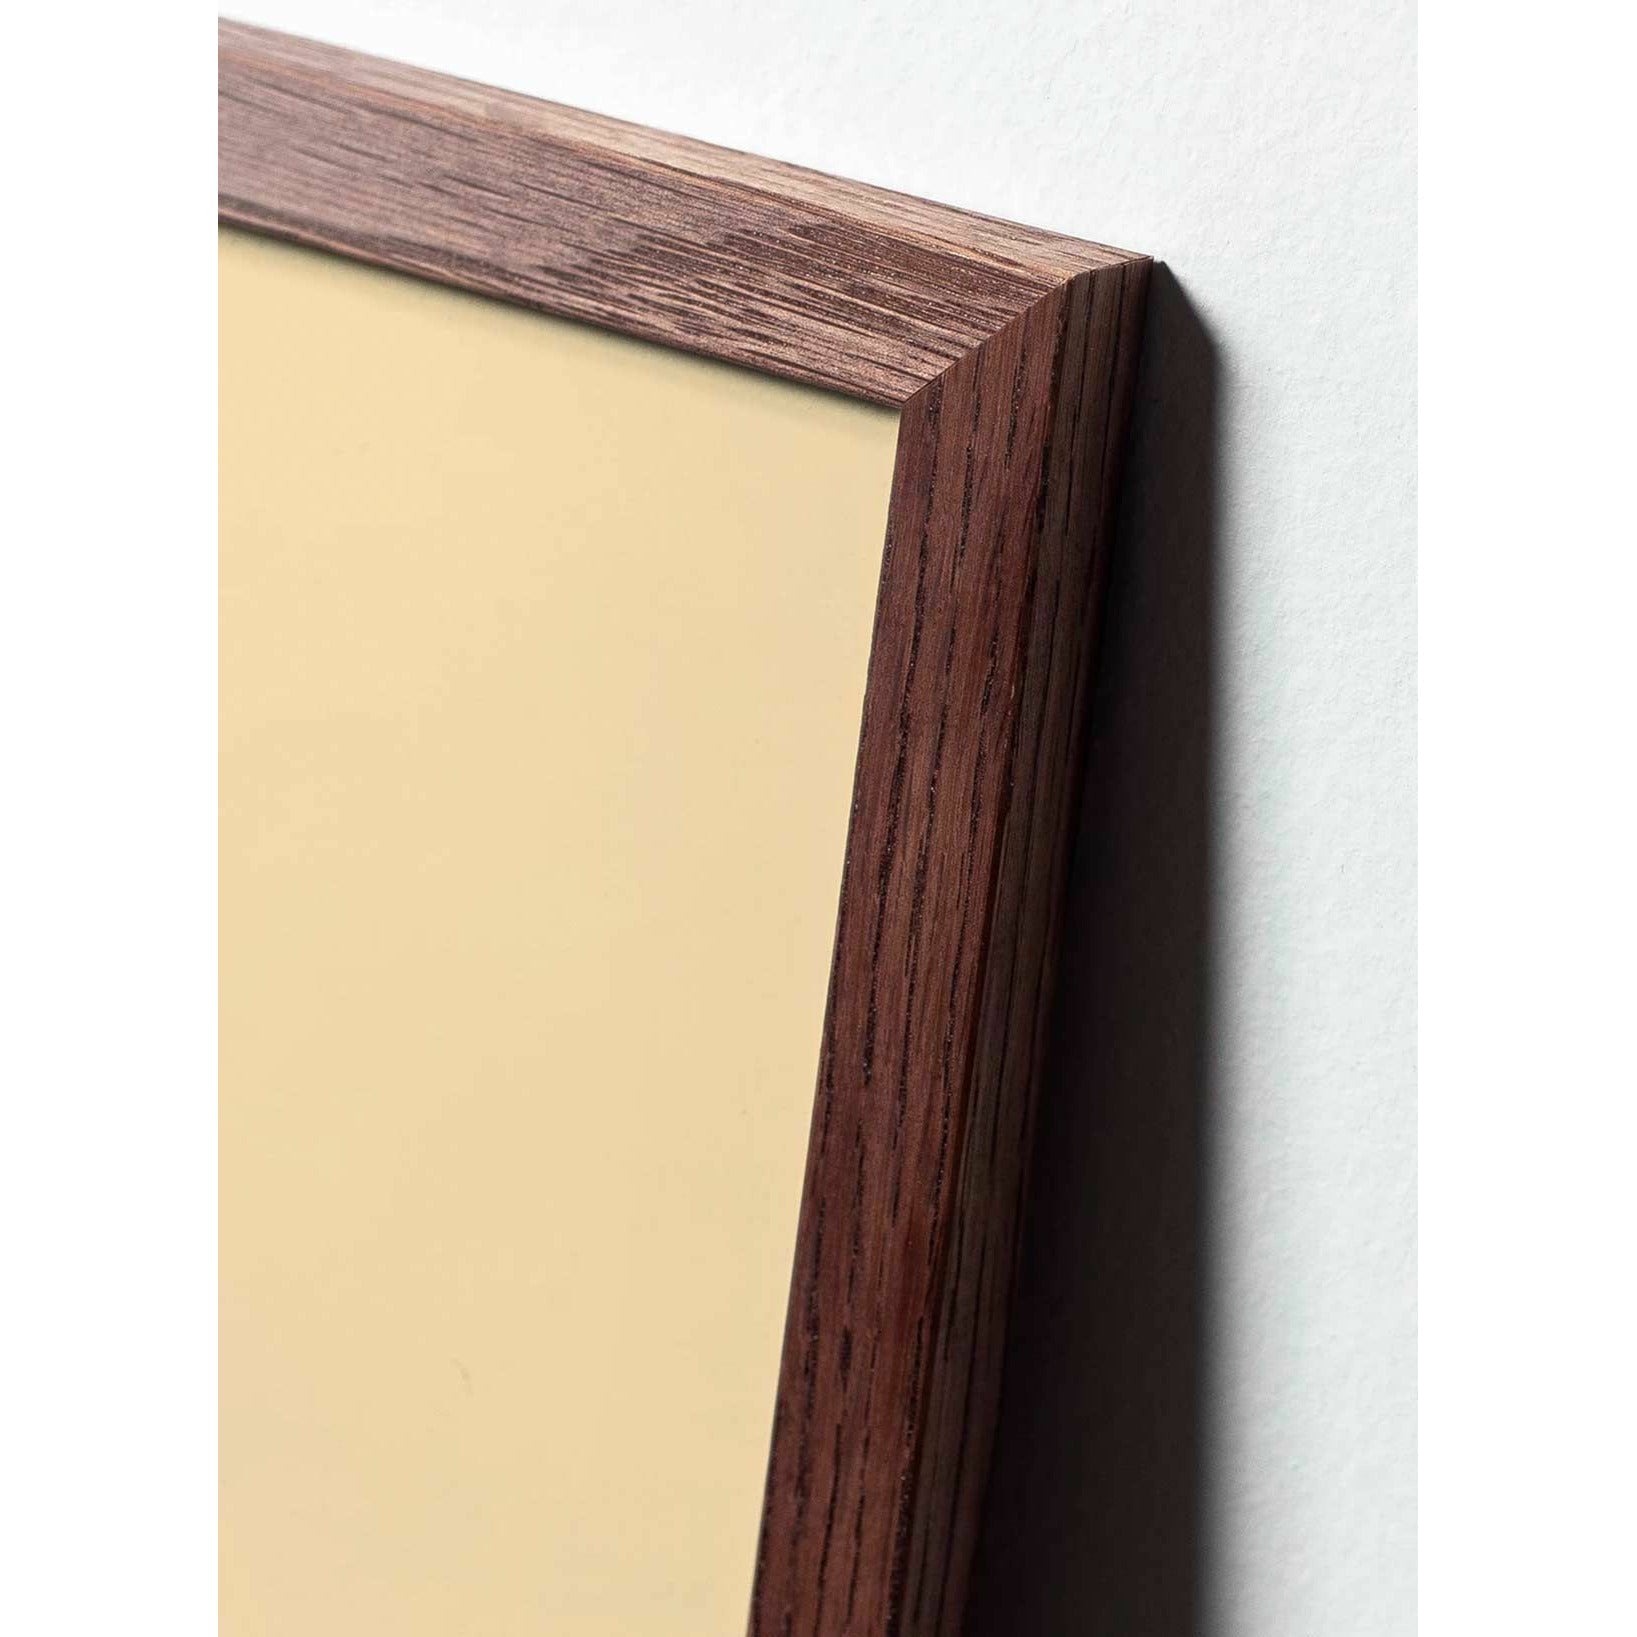 Póster de línea de cono de pino de creación, marco hecho de madera oscura de 70x100 cm, fondo azul